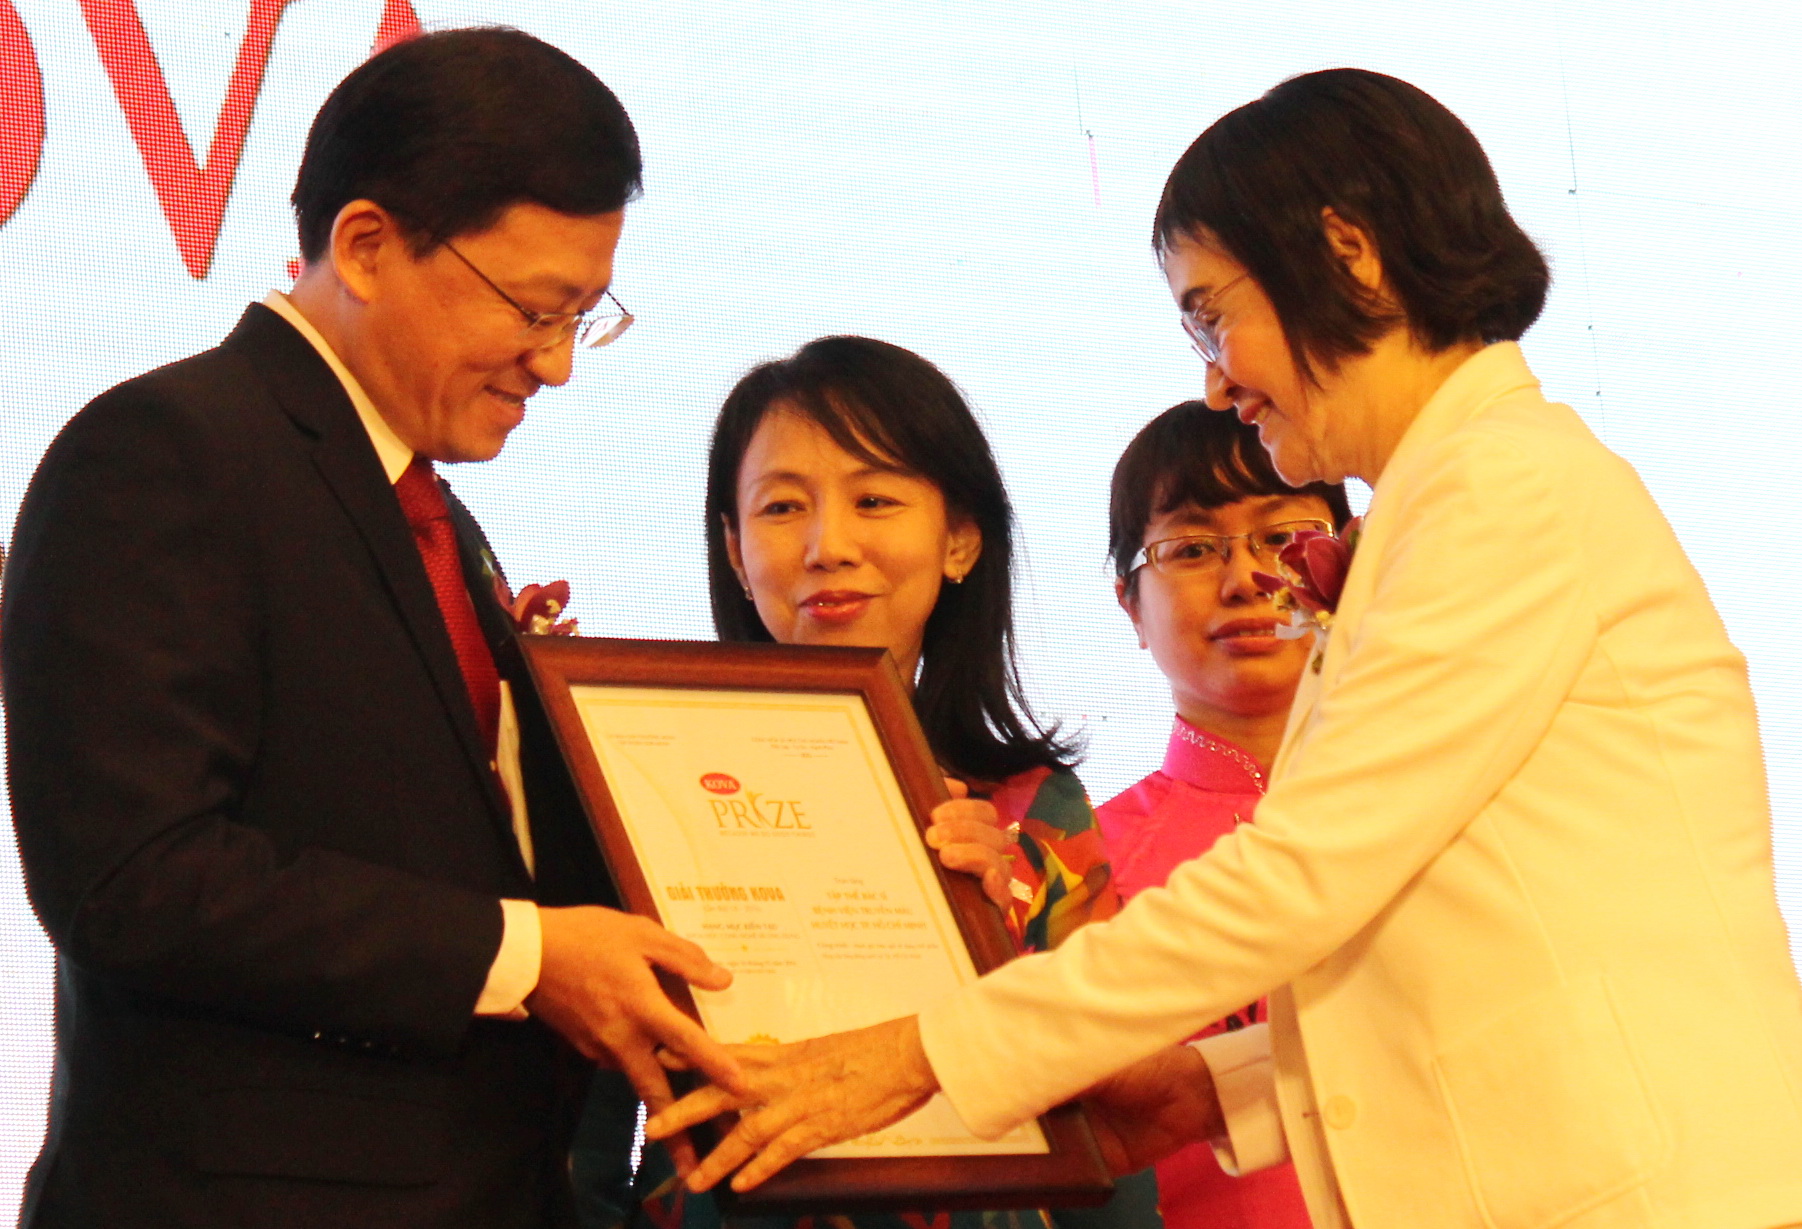 PGS.TS Nguyễn Thị Hòe (phải) - sáng lập giải thưởng Kova - tặng giải thưởng năm 2016 cho tập thể y bác sĩ Bệnh viện Truyền máu huyết học TP.HCM - Ảnh: Q.L.